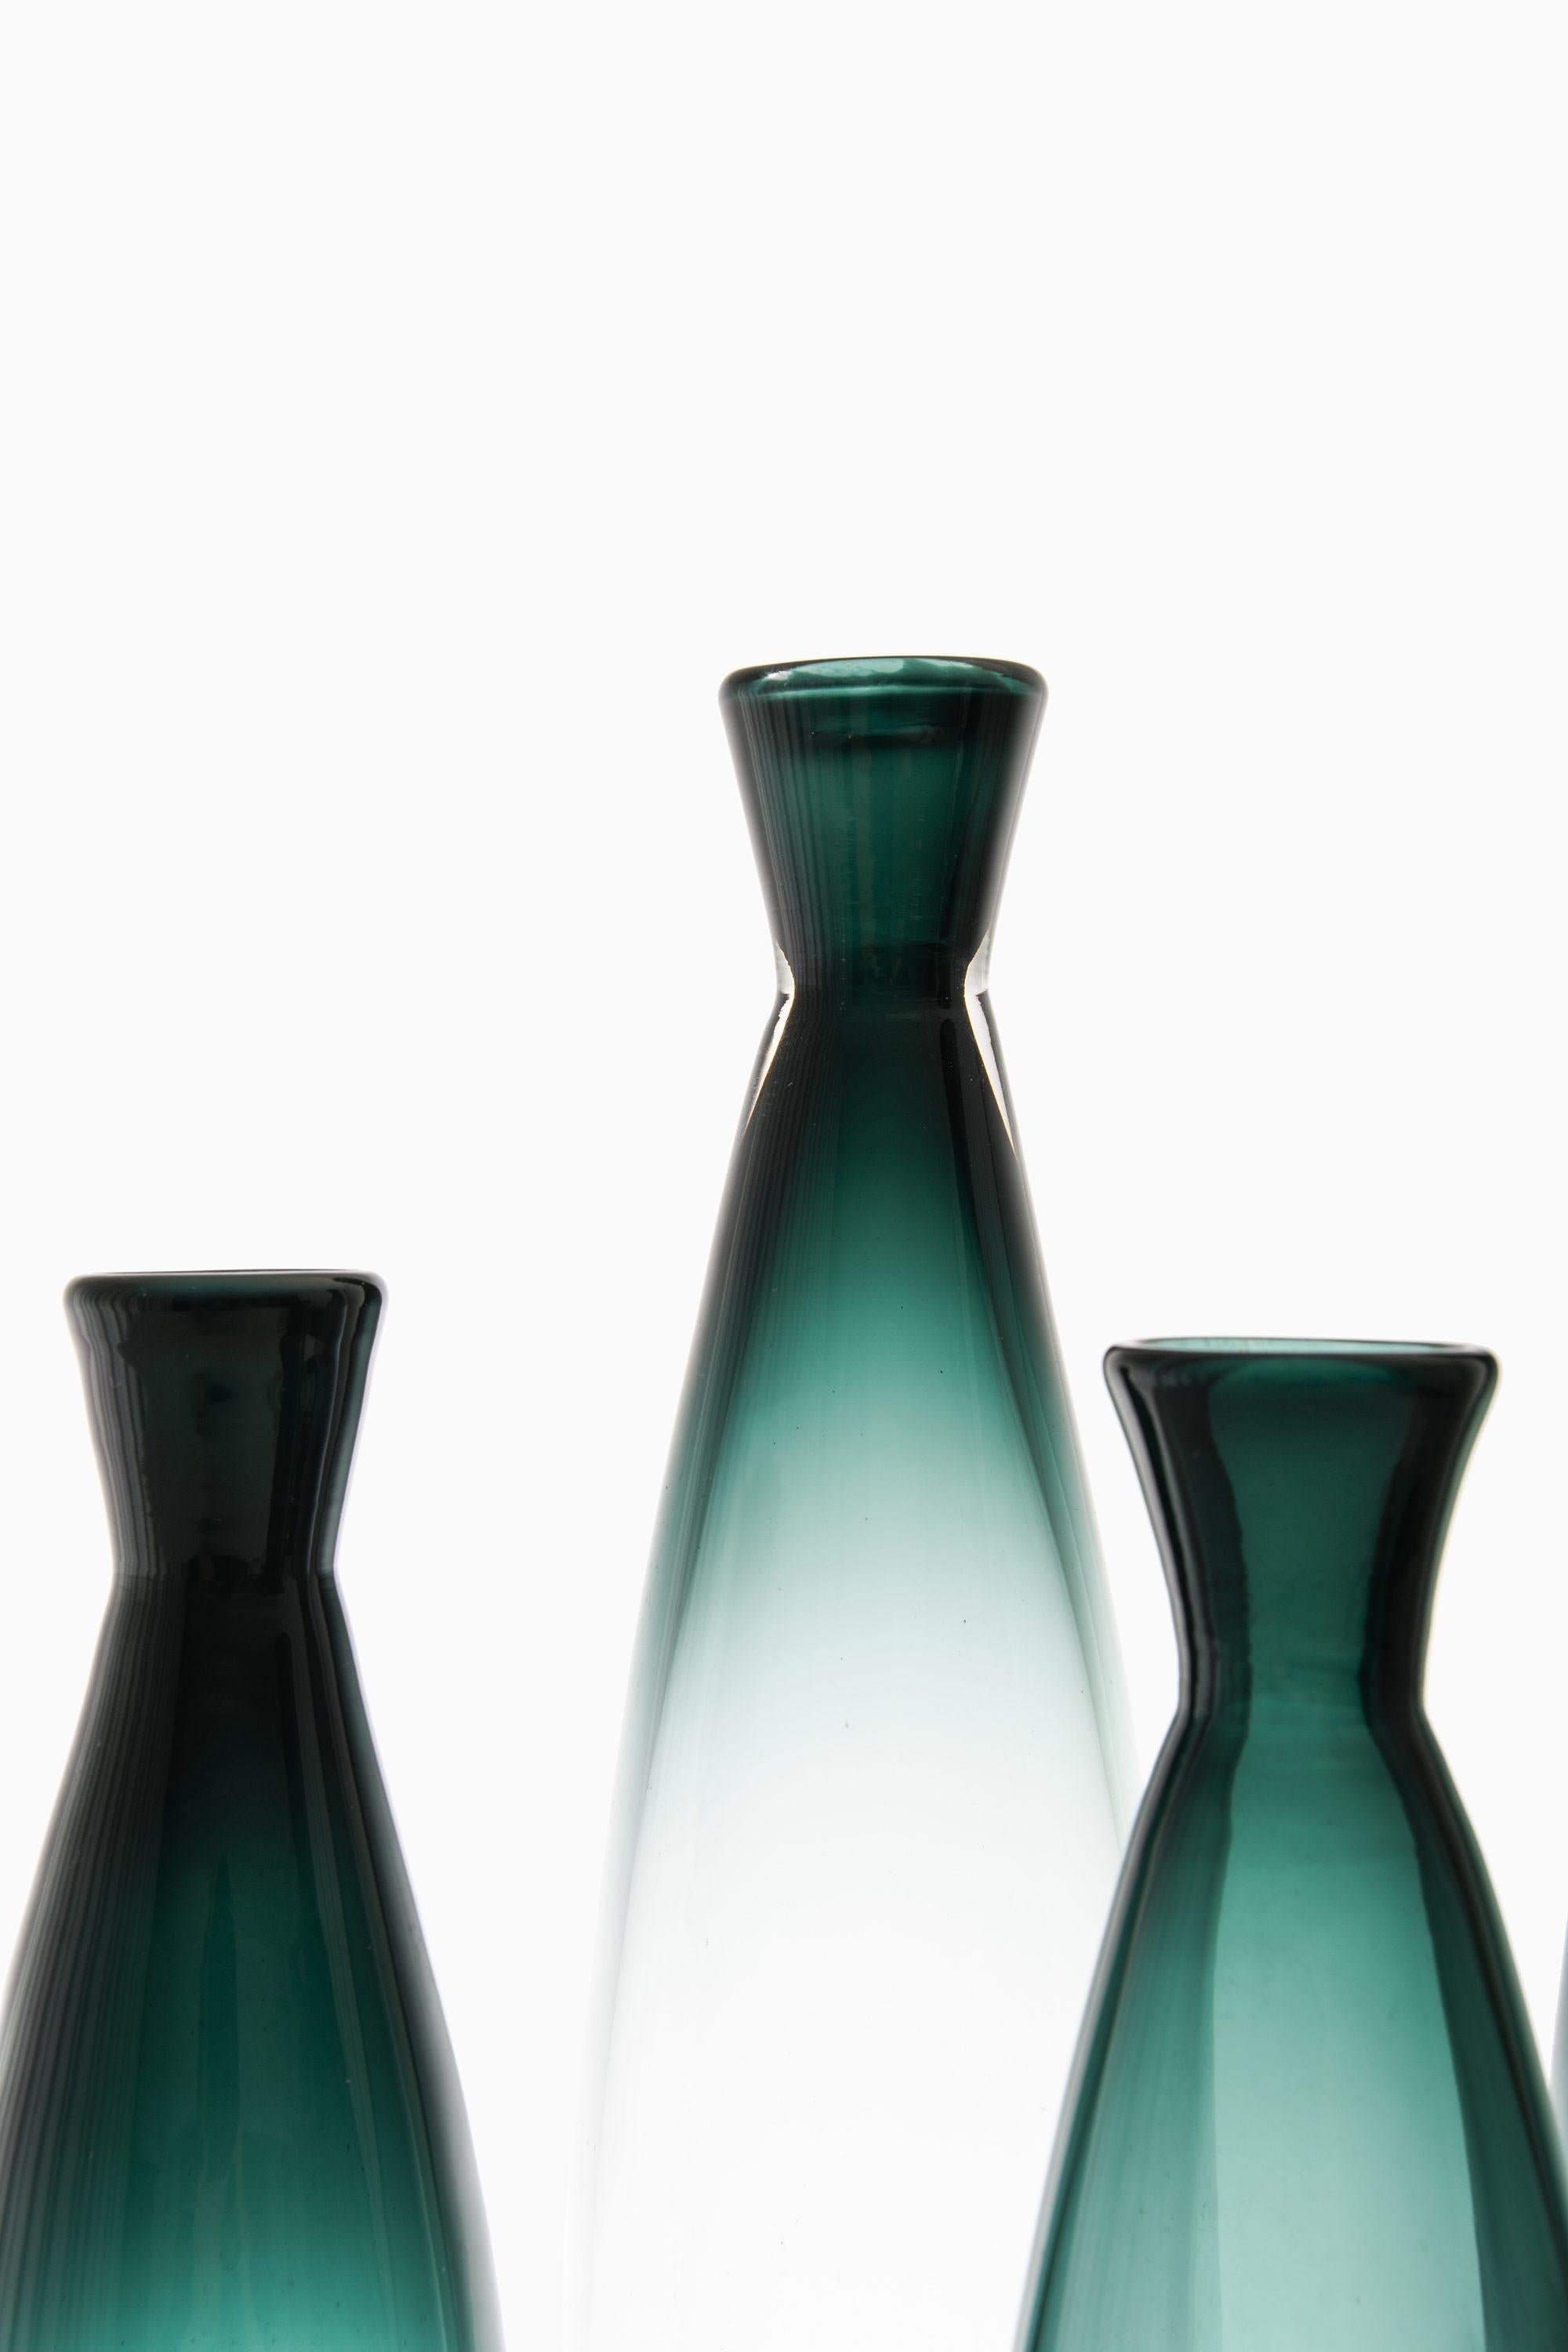 Ensemble de 4 vases en verre par Bengt Orup, années 1960

Informations supplémentaires :
Matériau : Verre
Style : Milieu du siècle, Scandinave
Produit par Johansfors en Suède
Dimensions (L x P x H) : 8,5 x 8,5 x 37 cm
Dimensions (L x P x H) : 7,5 x